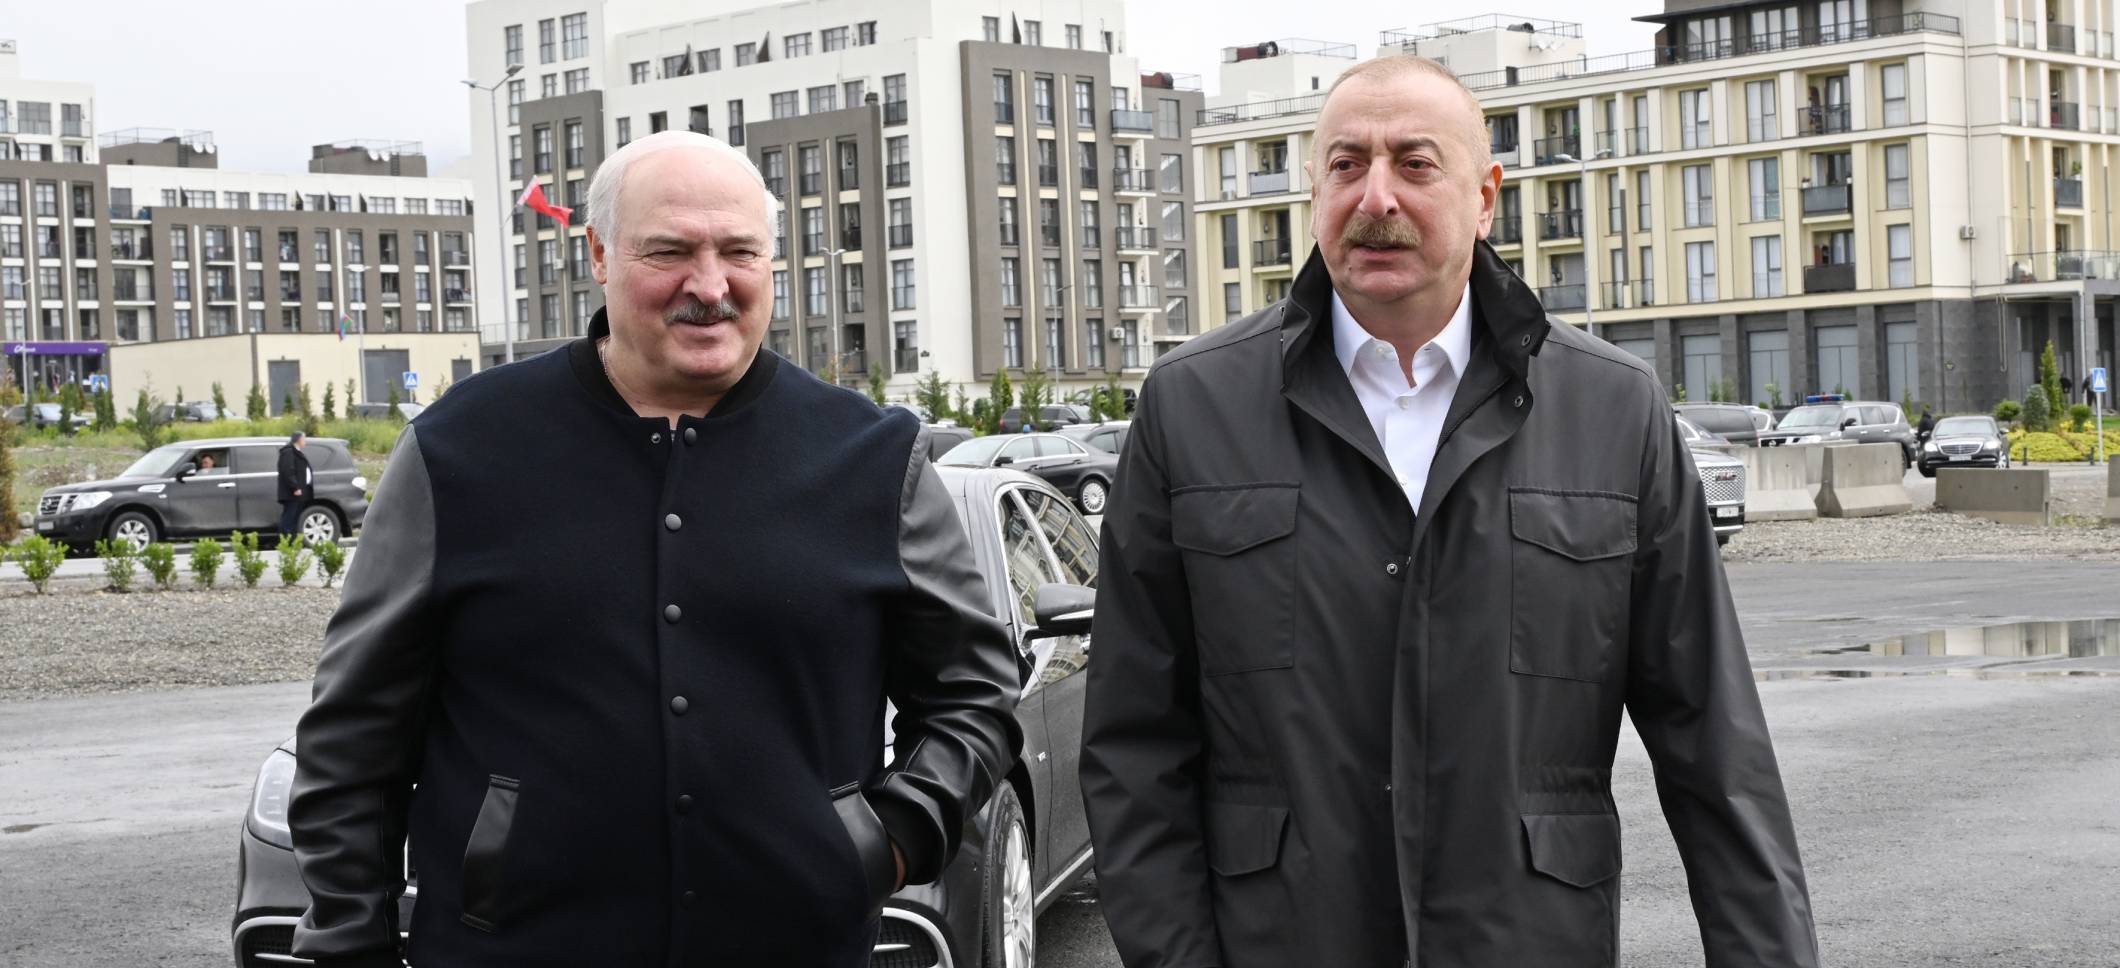 Президенты Азербайджана и Беларуси посмотрели разрушенные места города Физули и ознакомились с Генпланом города